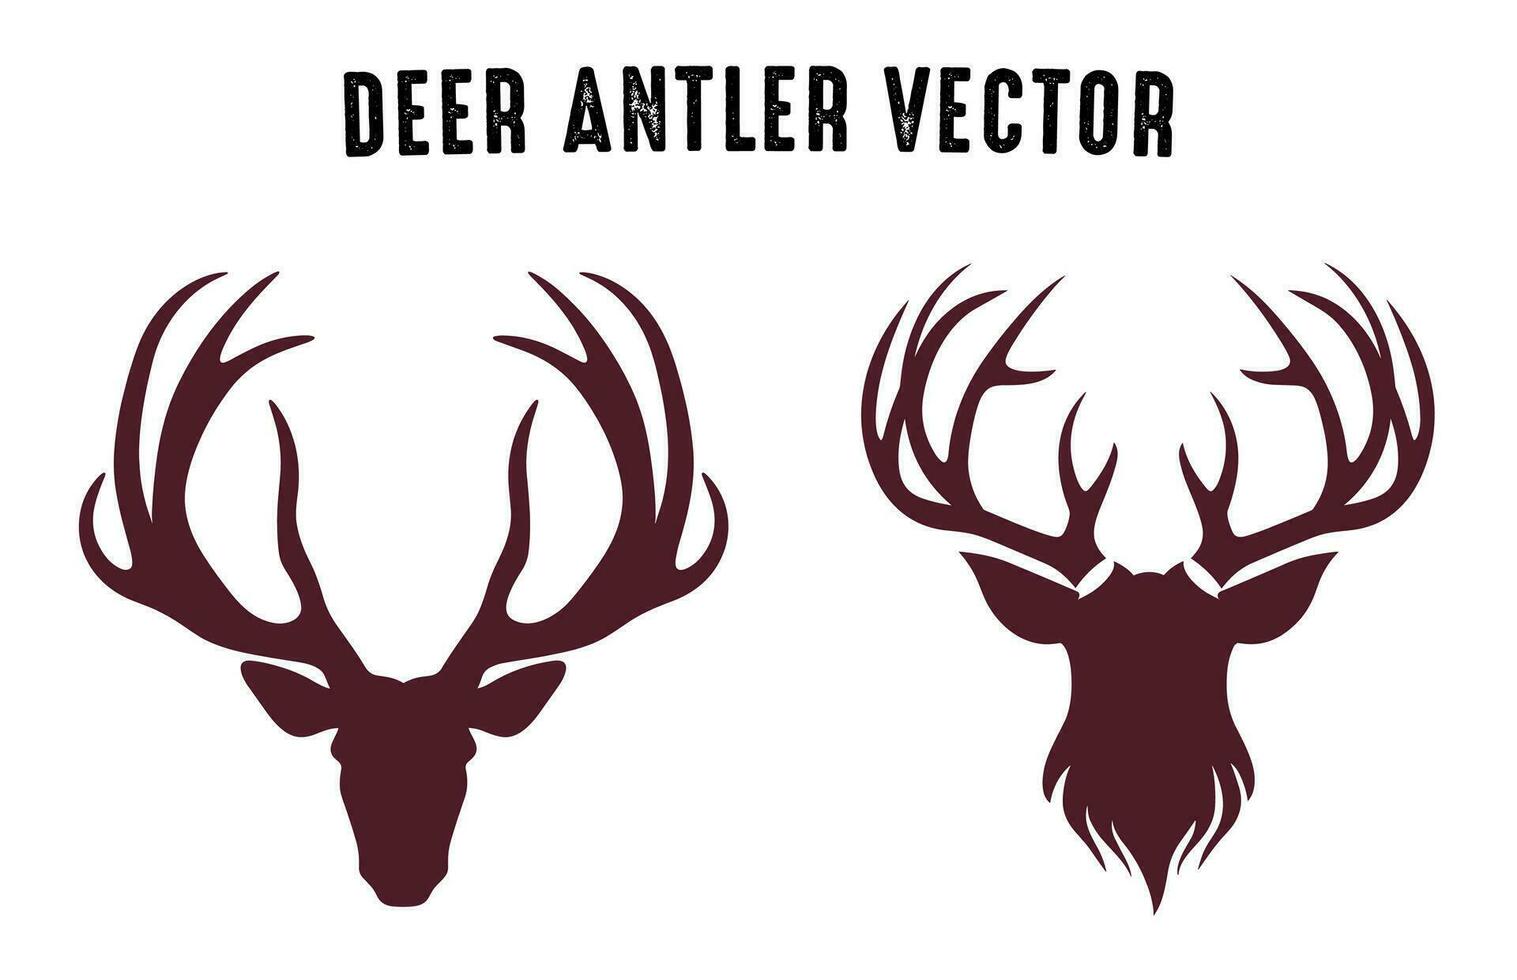 Deer antler silhouettes vector Set, Deer antlers antlers icon bundle